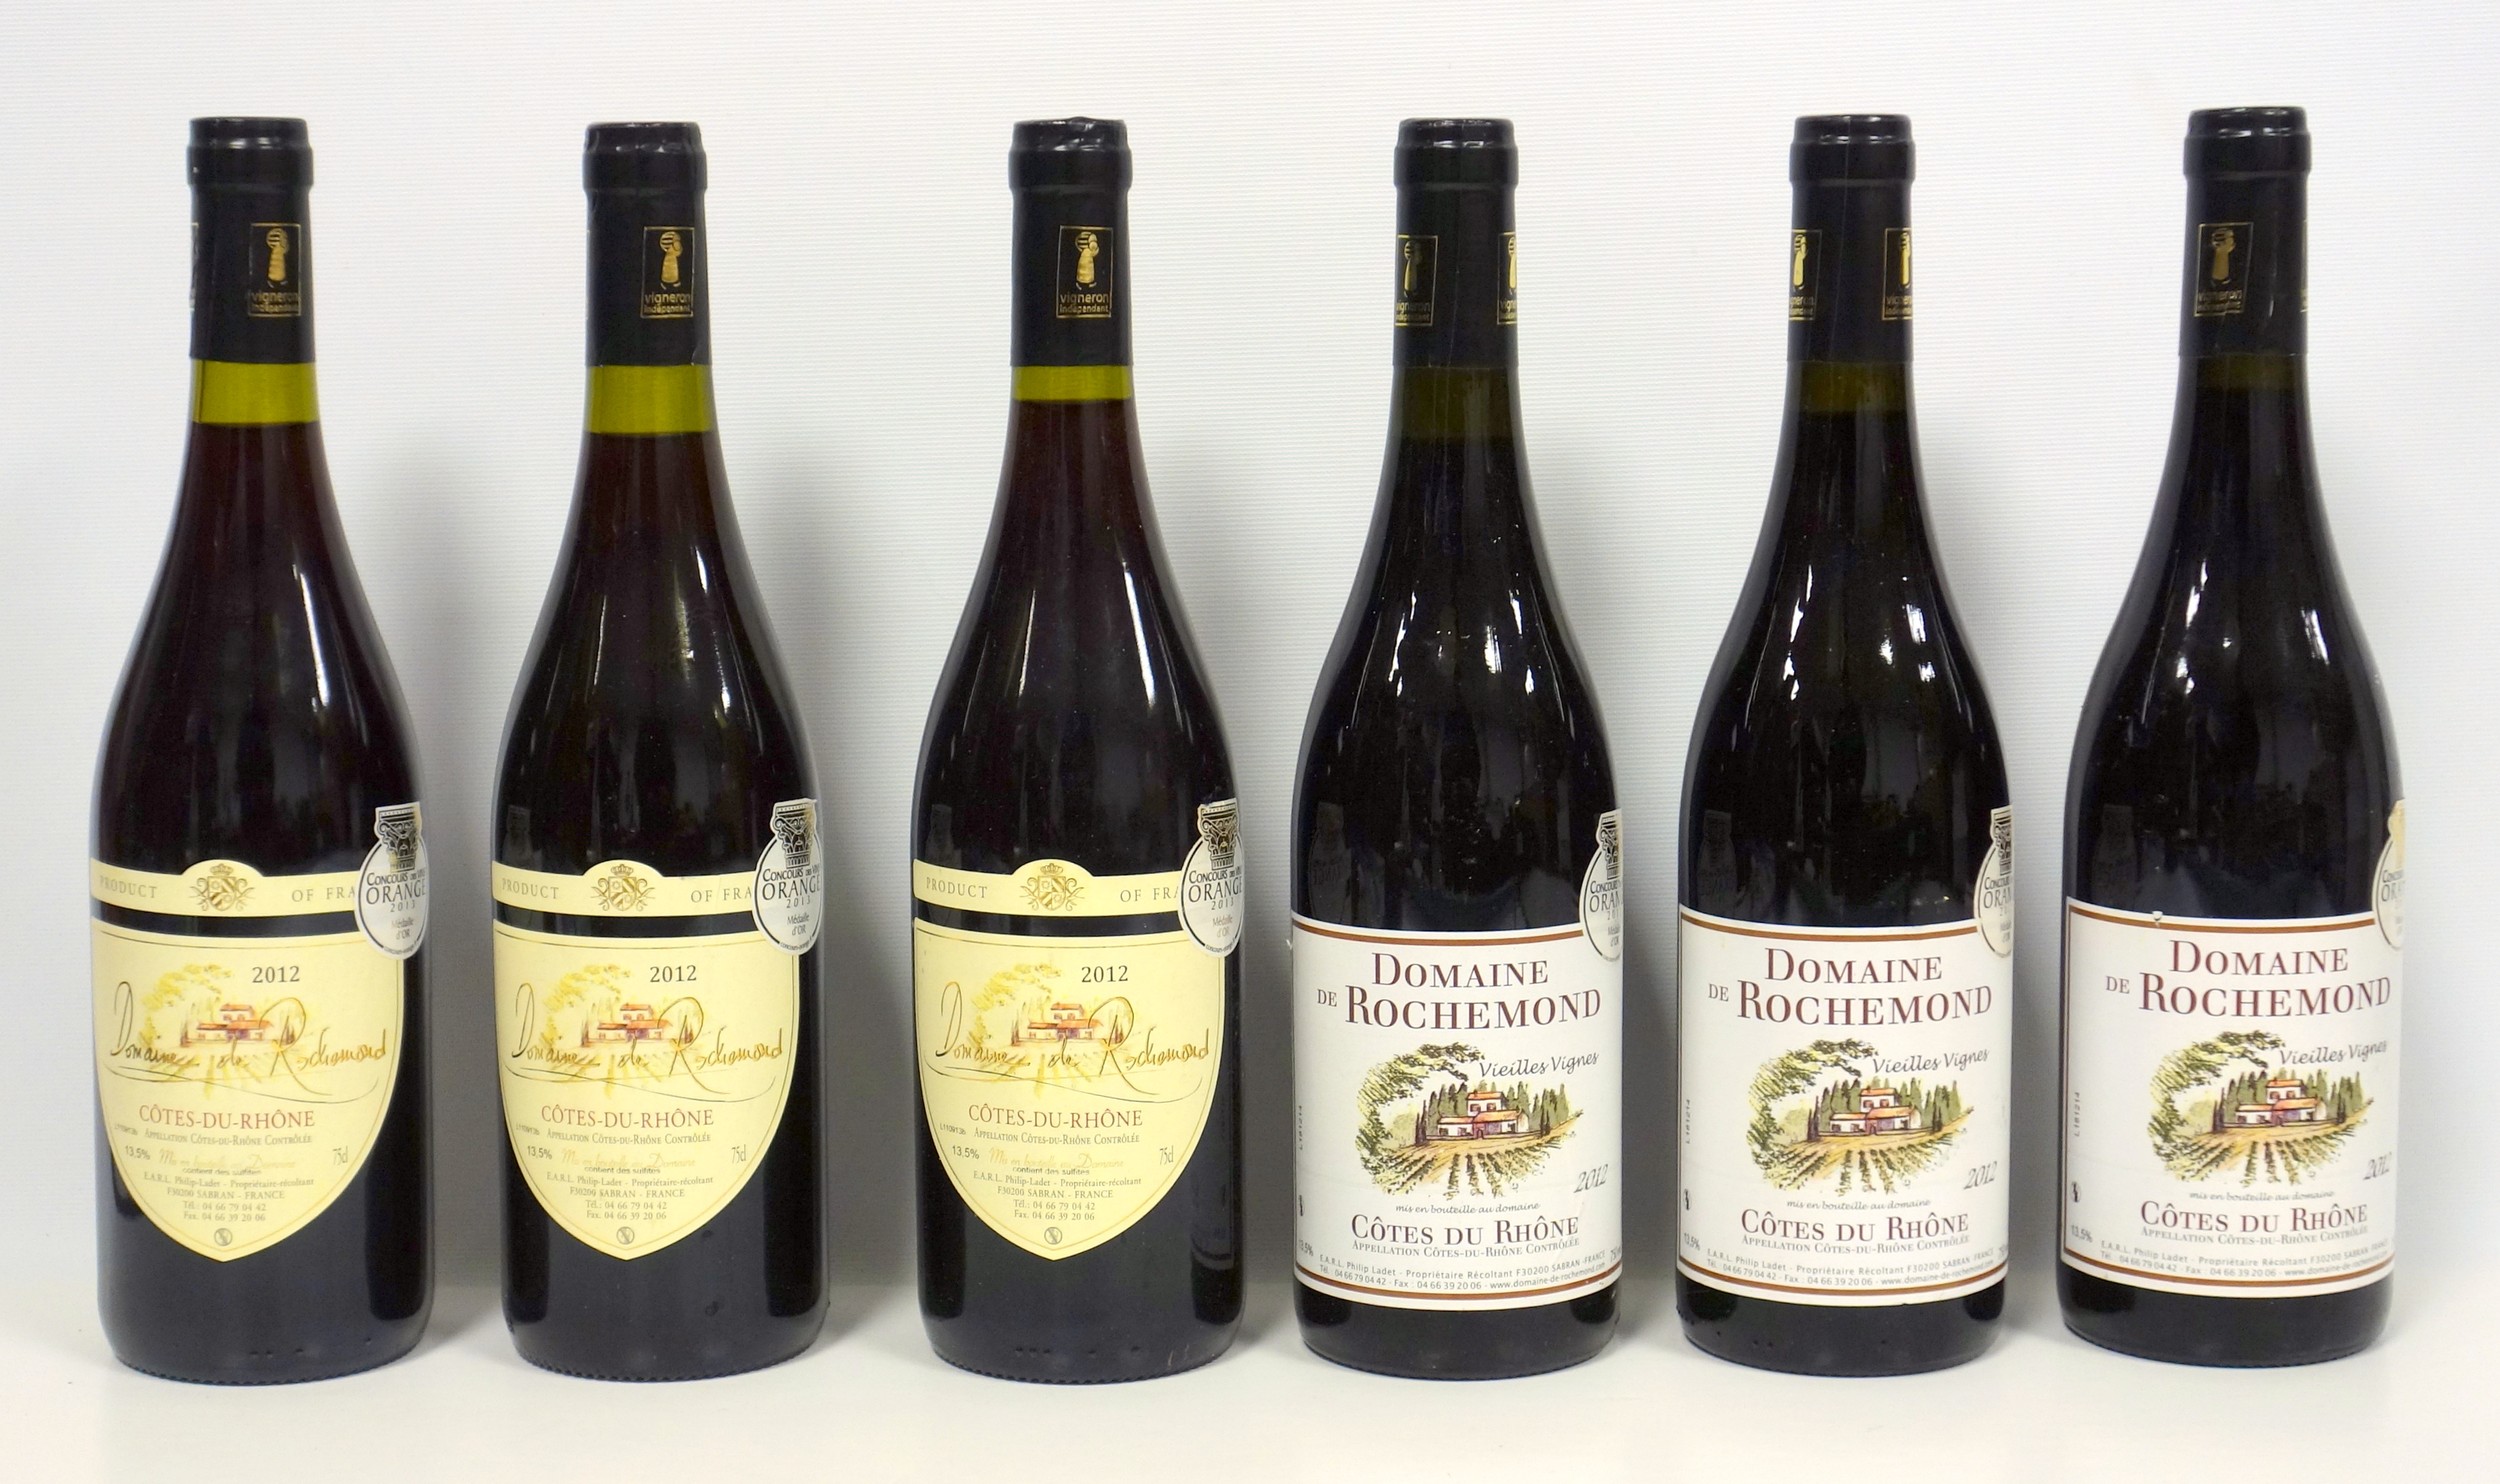 6 bottles Domaine de Rochemond, Cotes du Rhone, 2012 (inc. 3 bottles Vielles Vignes), gold medal, - Image 2 of 2